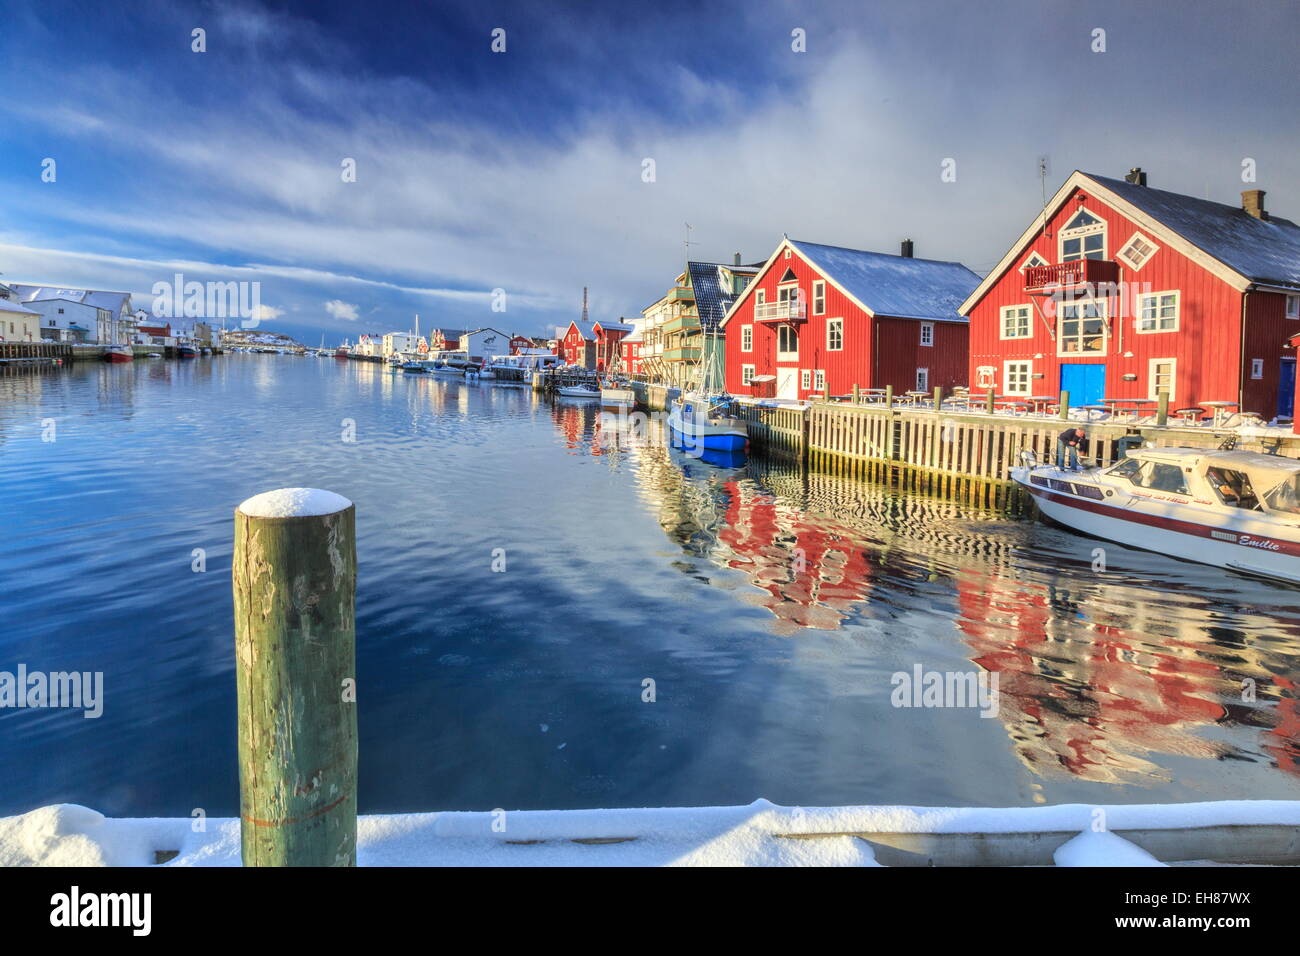 Voir colorées de maisons de pêcheurs et bateaux privés donnant sur le canal-port de Henningsvær, îles Lofoten, Norvège Banque D'Images